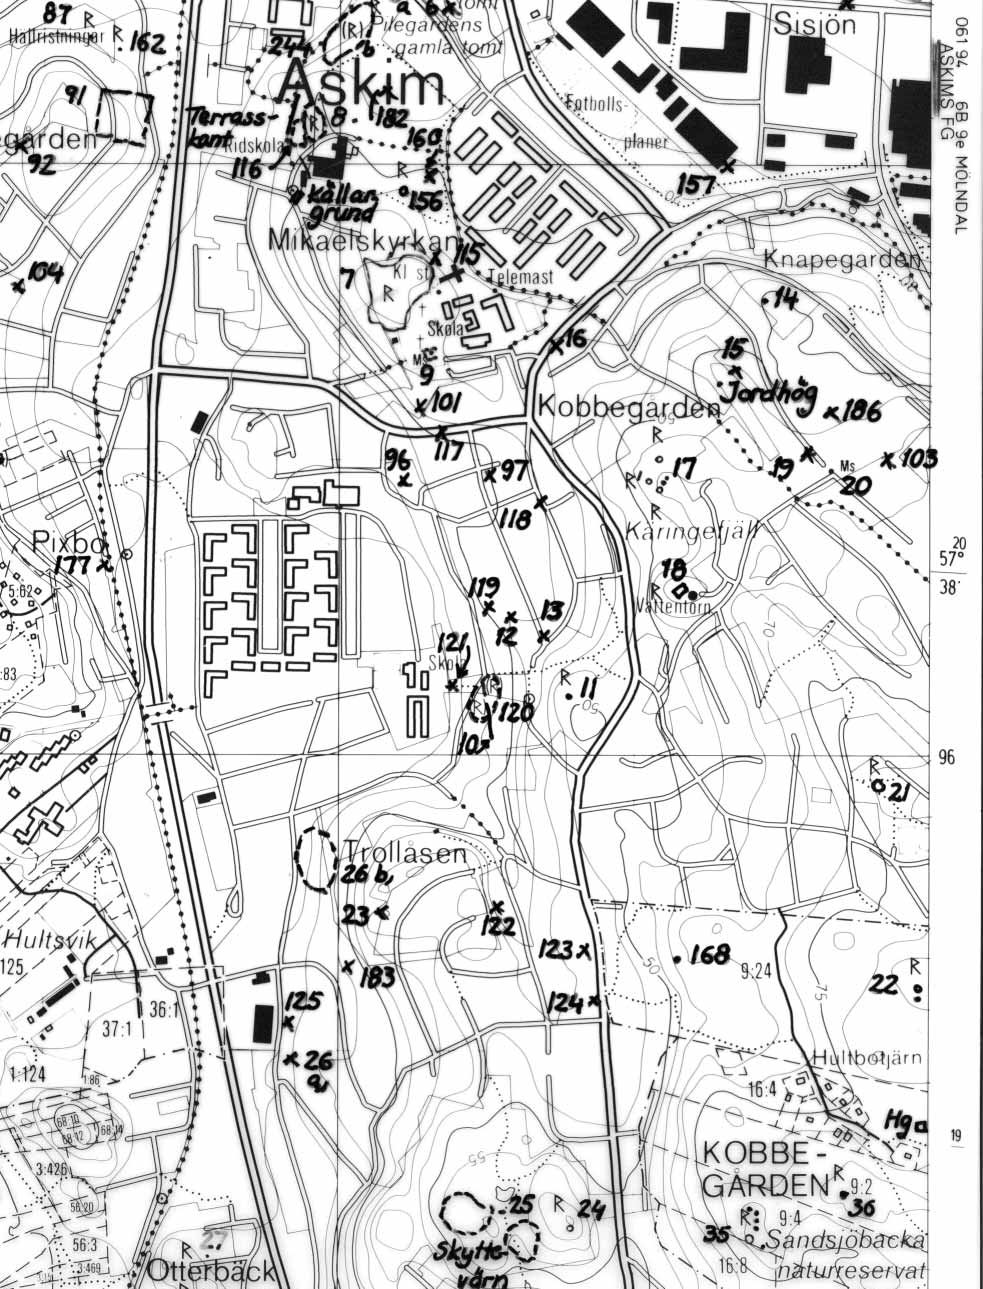 Fig. 3. Utsnitt ur Fastighetskartan, blad 6B 9d Västra Frölunda, med undersökningsområdet markerat. Skala 1:10 000.